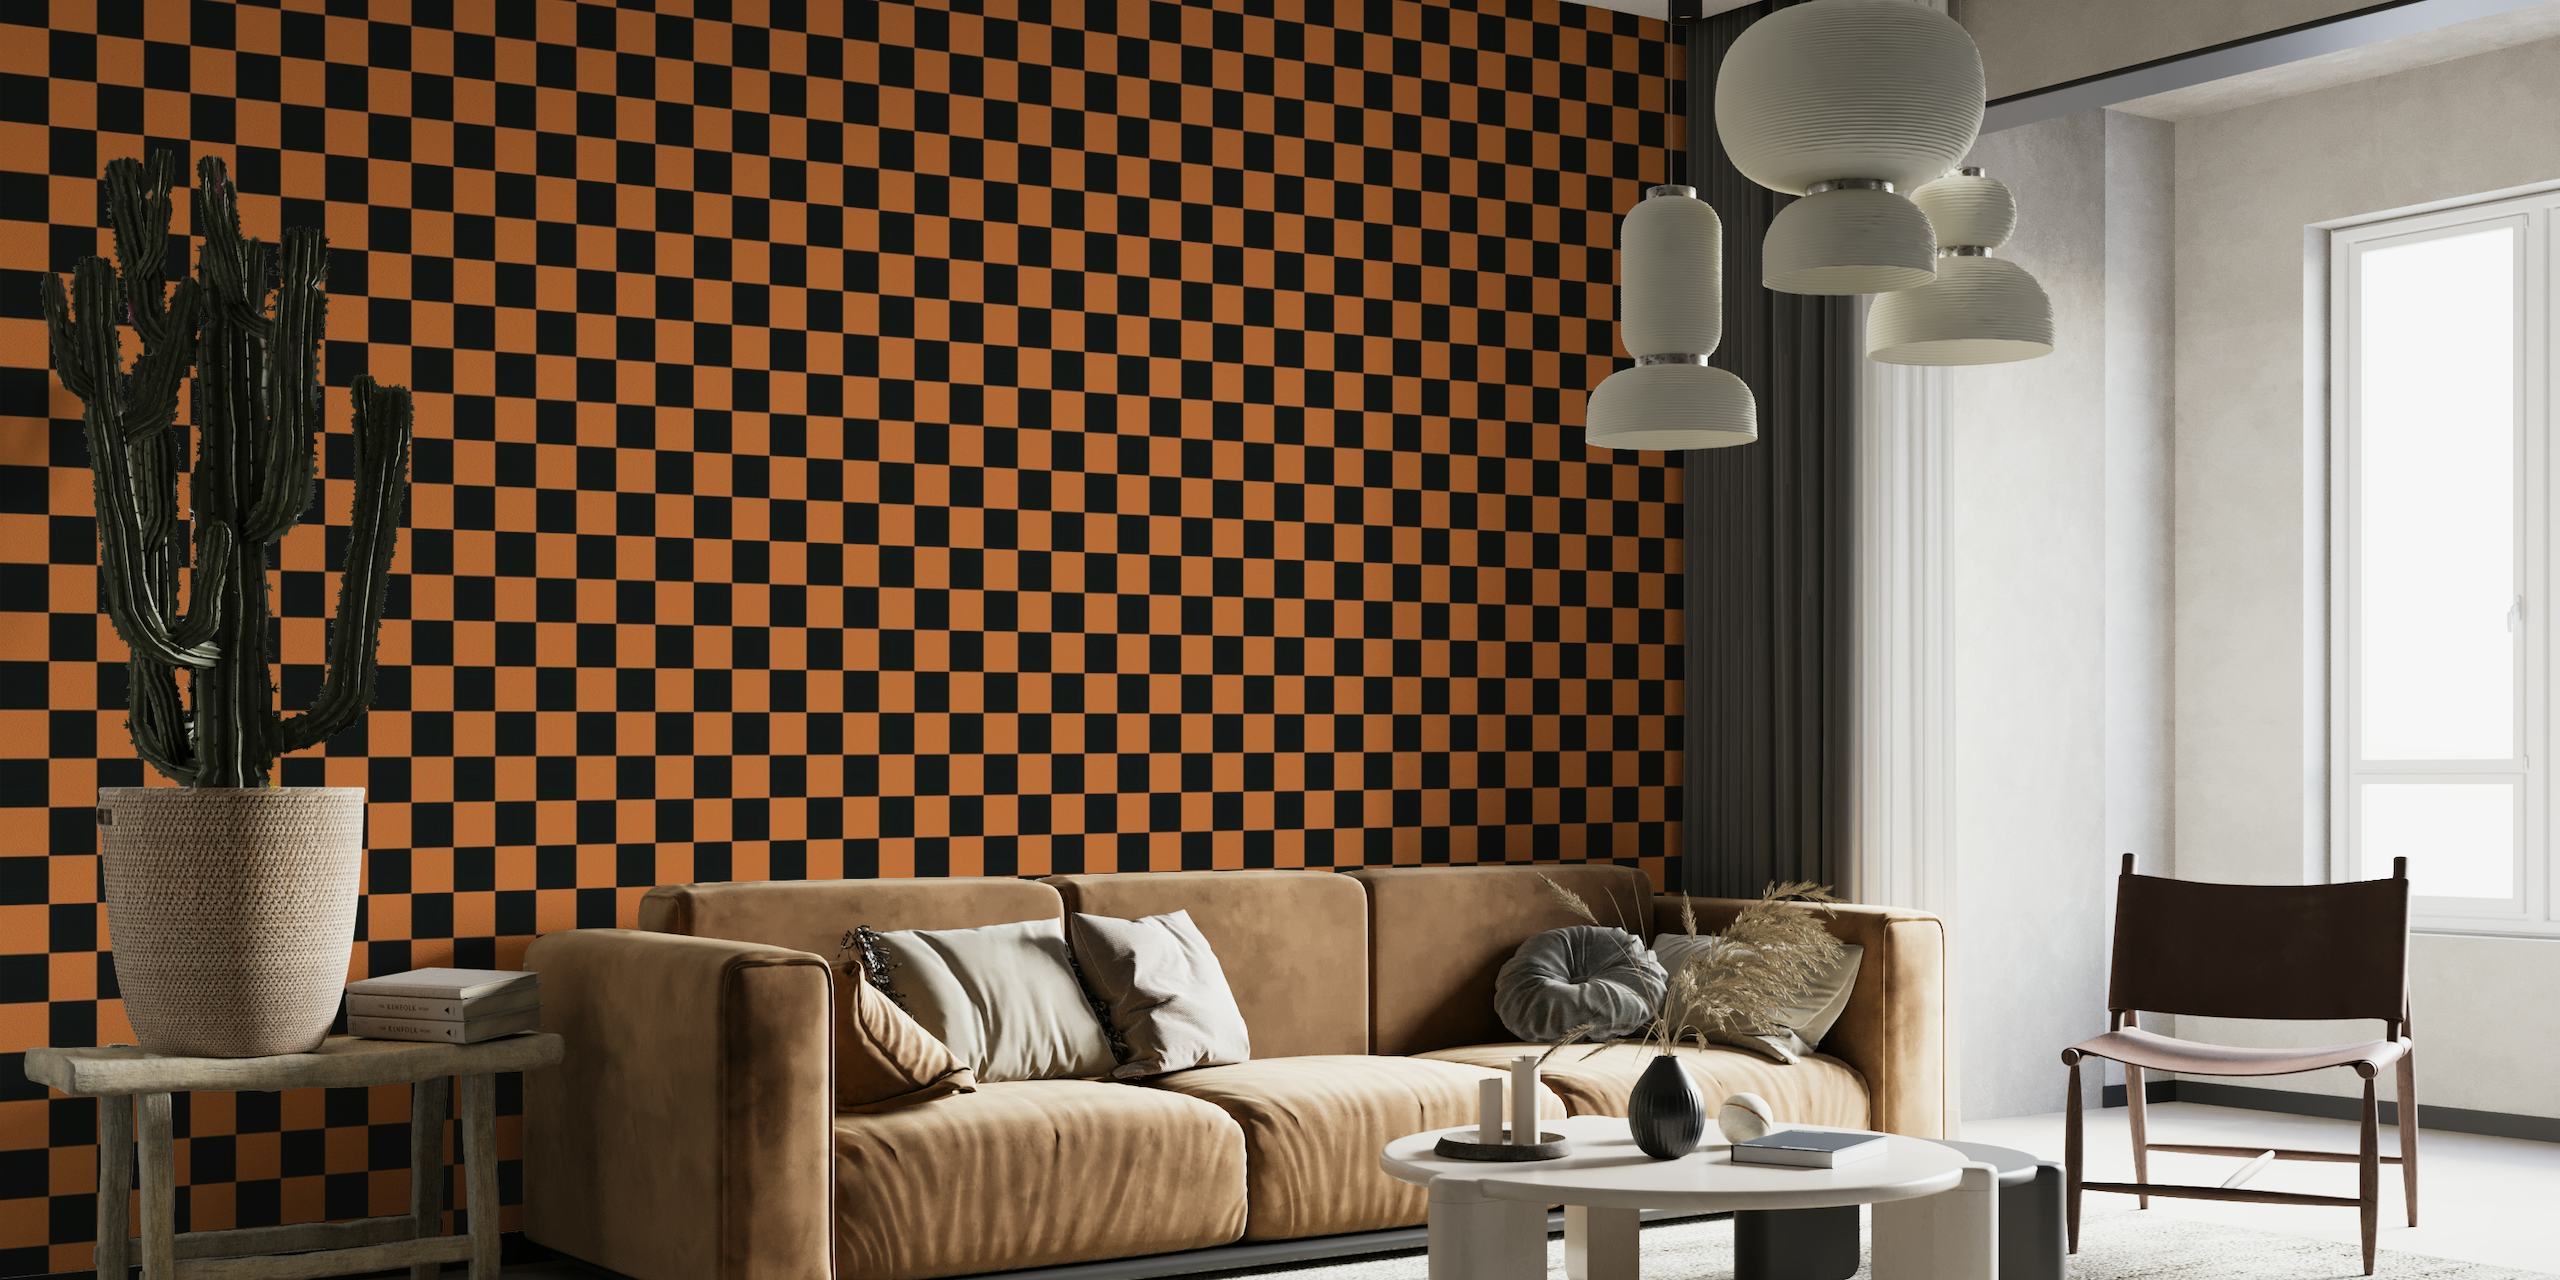 Checkerboard - Orange Brown and Black papel pintado